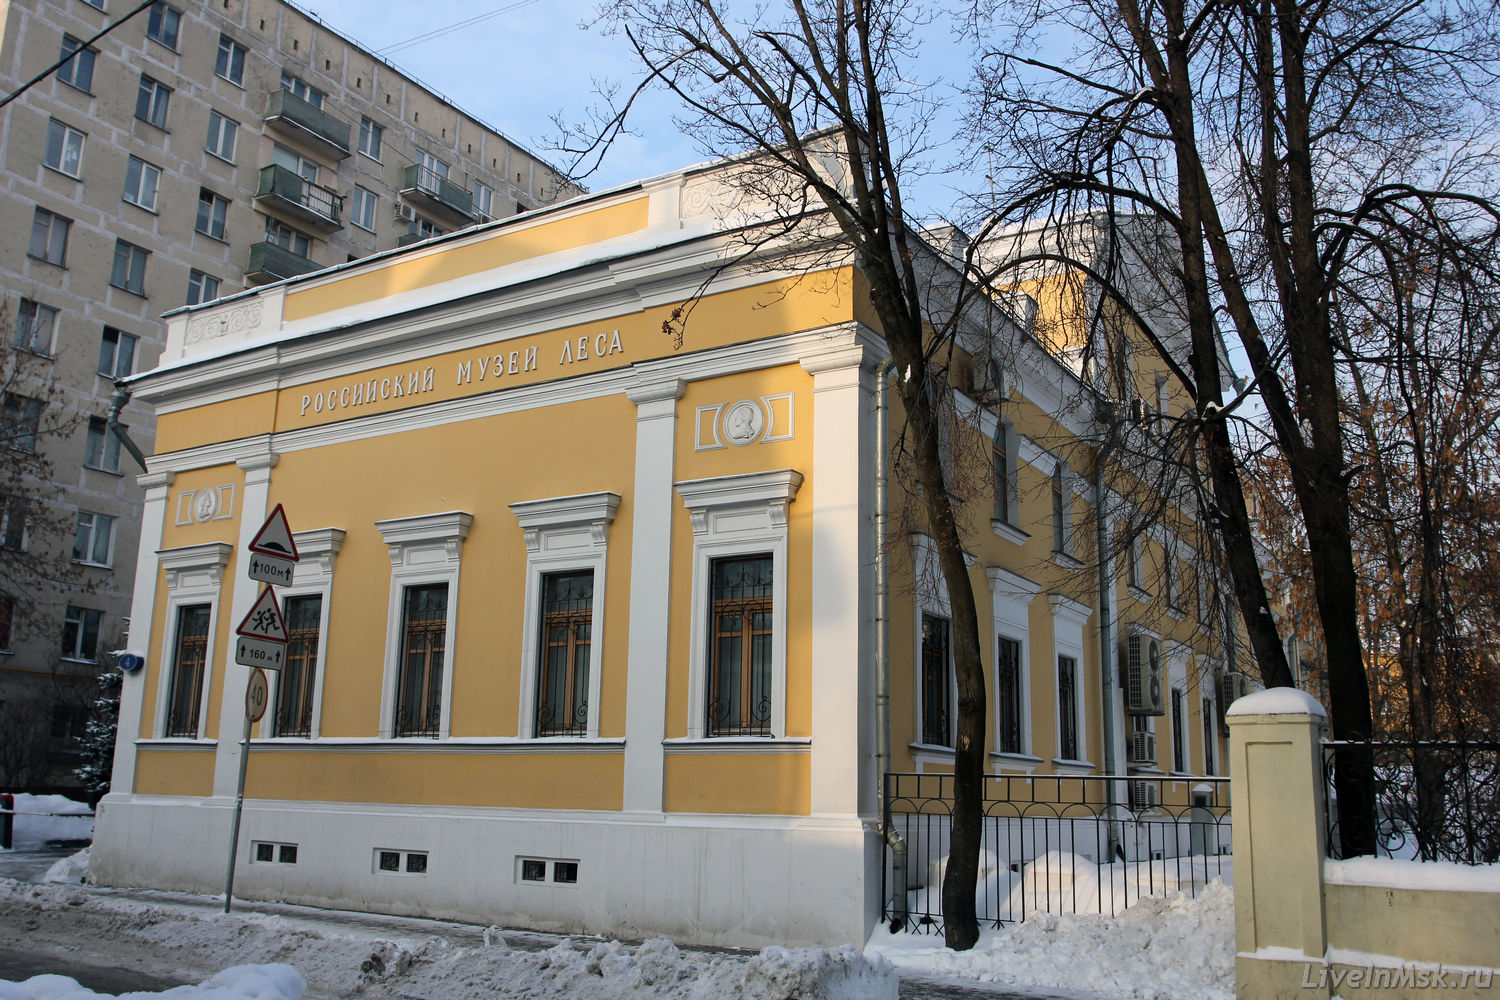 Российский музей леса, фото 2013 года